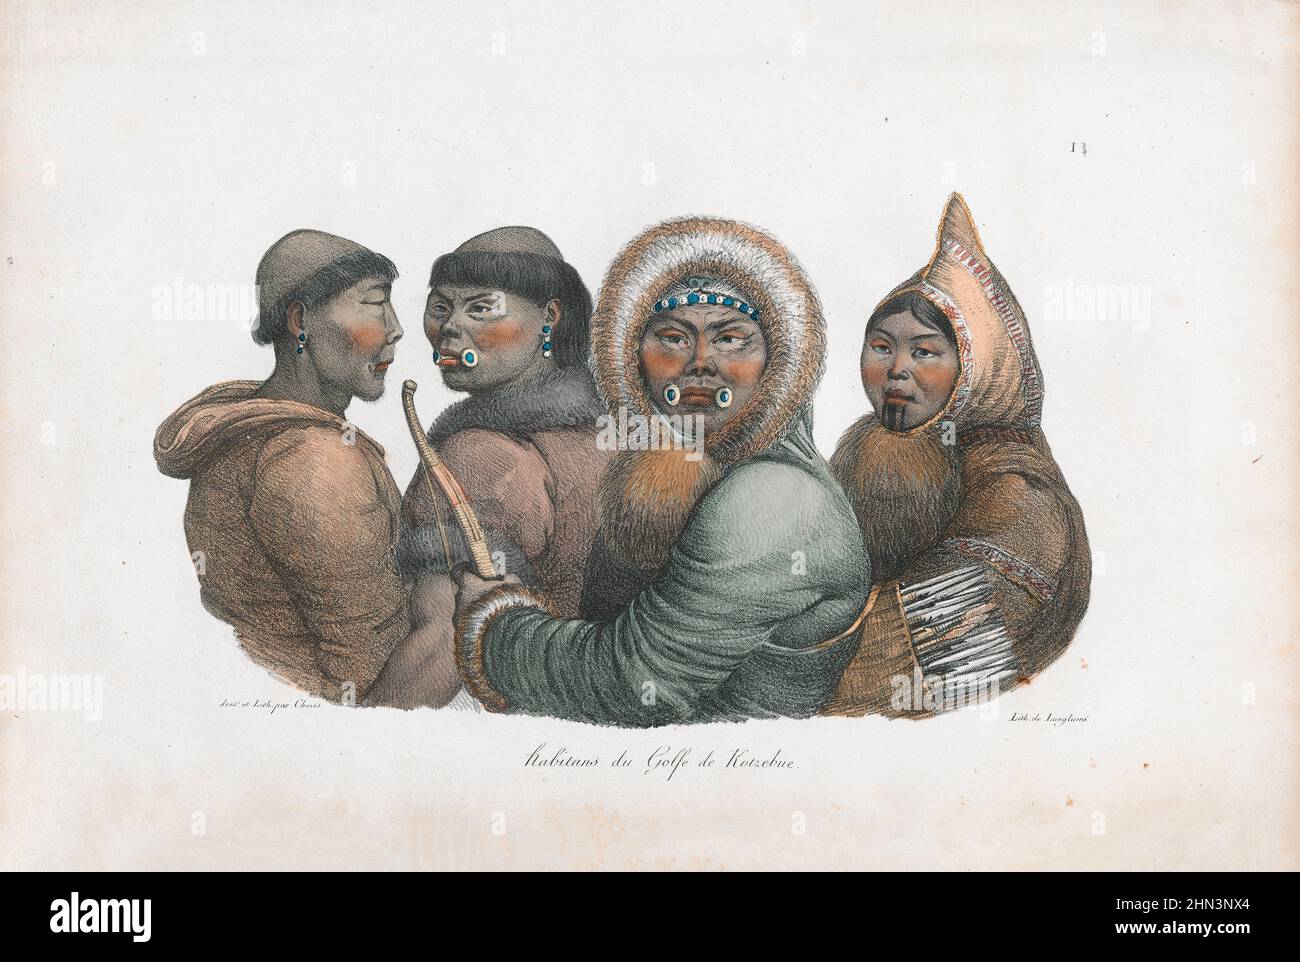 Illustration de couleur vintage des habitants du détroit de Kotzebue. 1822, par Louis Choris. Le détroit de Kotzebue est un bras de la mer de Chukchi dans l'ouest reg Banque D'Images